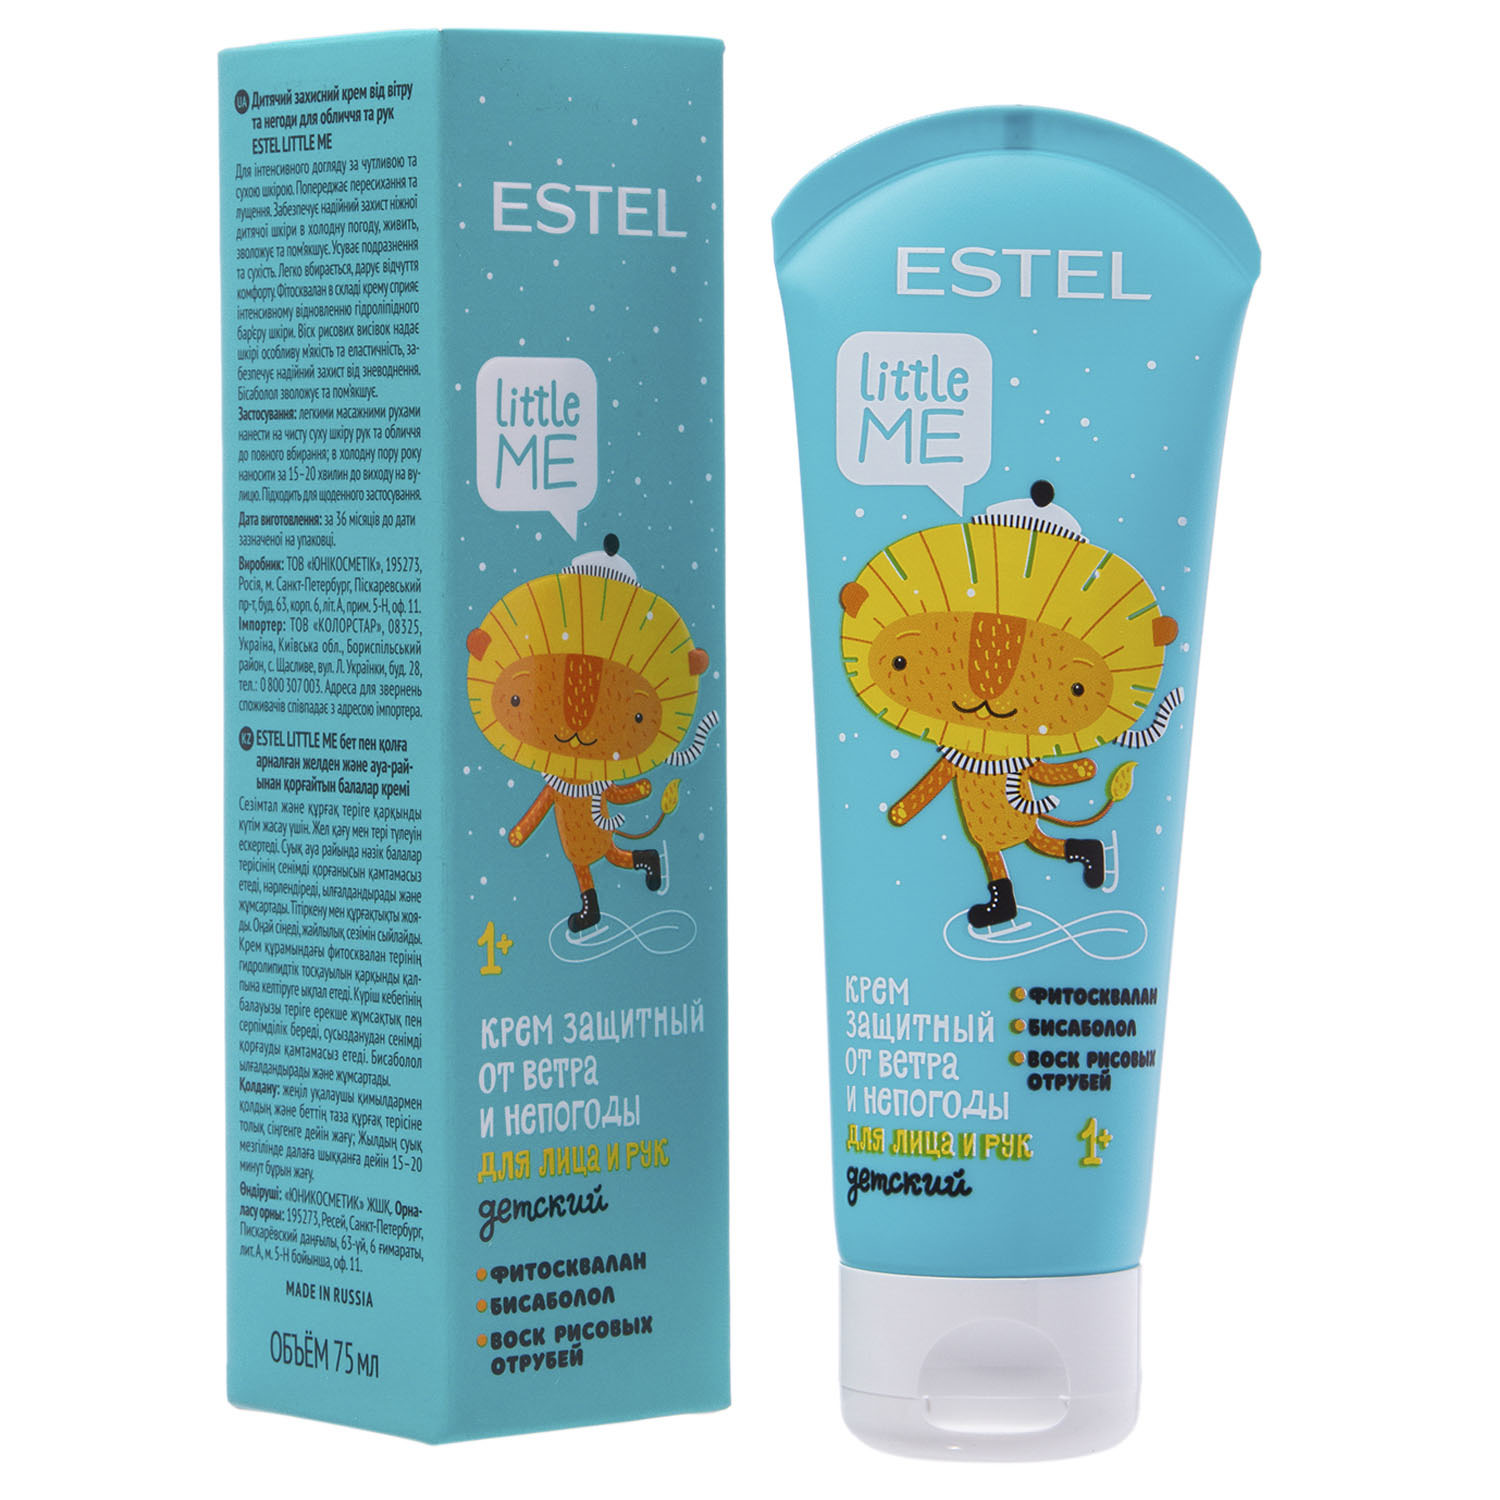 Estel Детский защитный крем от ветра и непогоды для лица и рук, 75 мл (Estel, Little me)